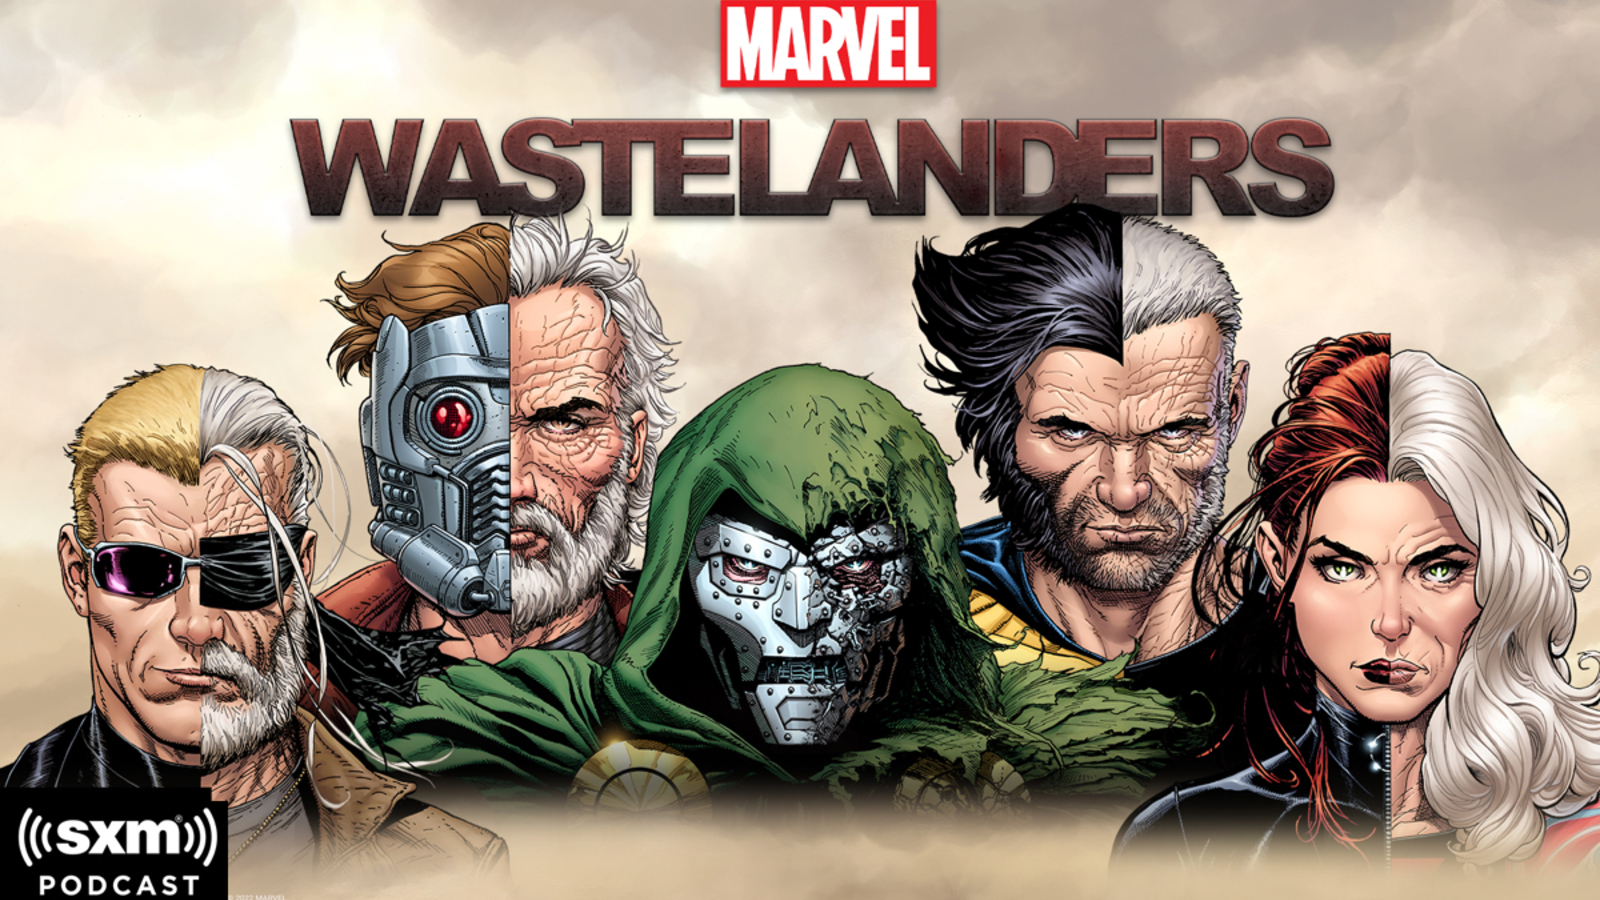 Marvel's Wastelanders - Wikipedia